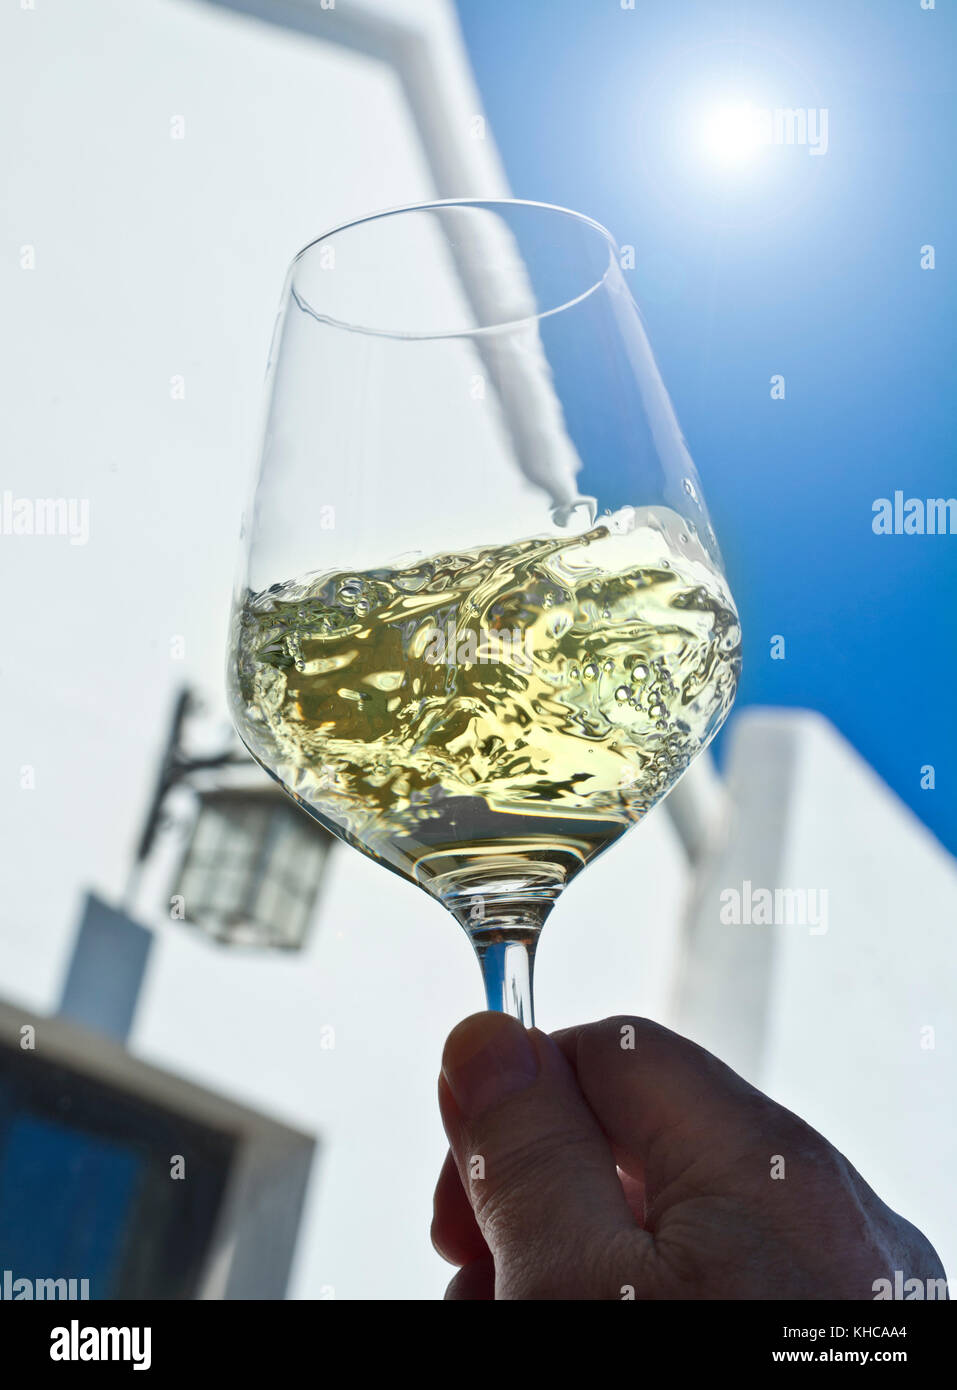 Weißwein Sonne, Glas wirbeln Verkostung und Bewertung in sonnigen blauen Himmel im Freien draußen Wein trinken Probe Terrasse Situation Stockfoto